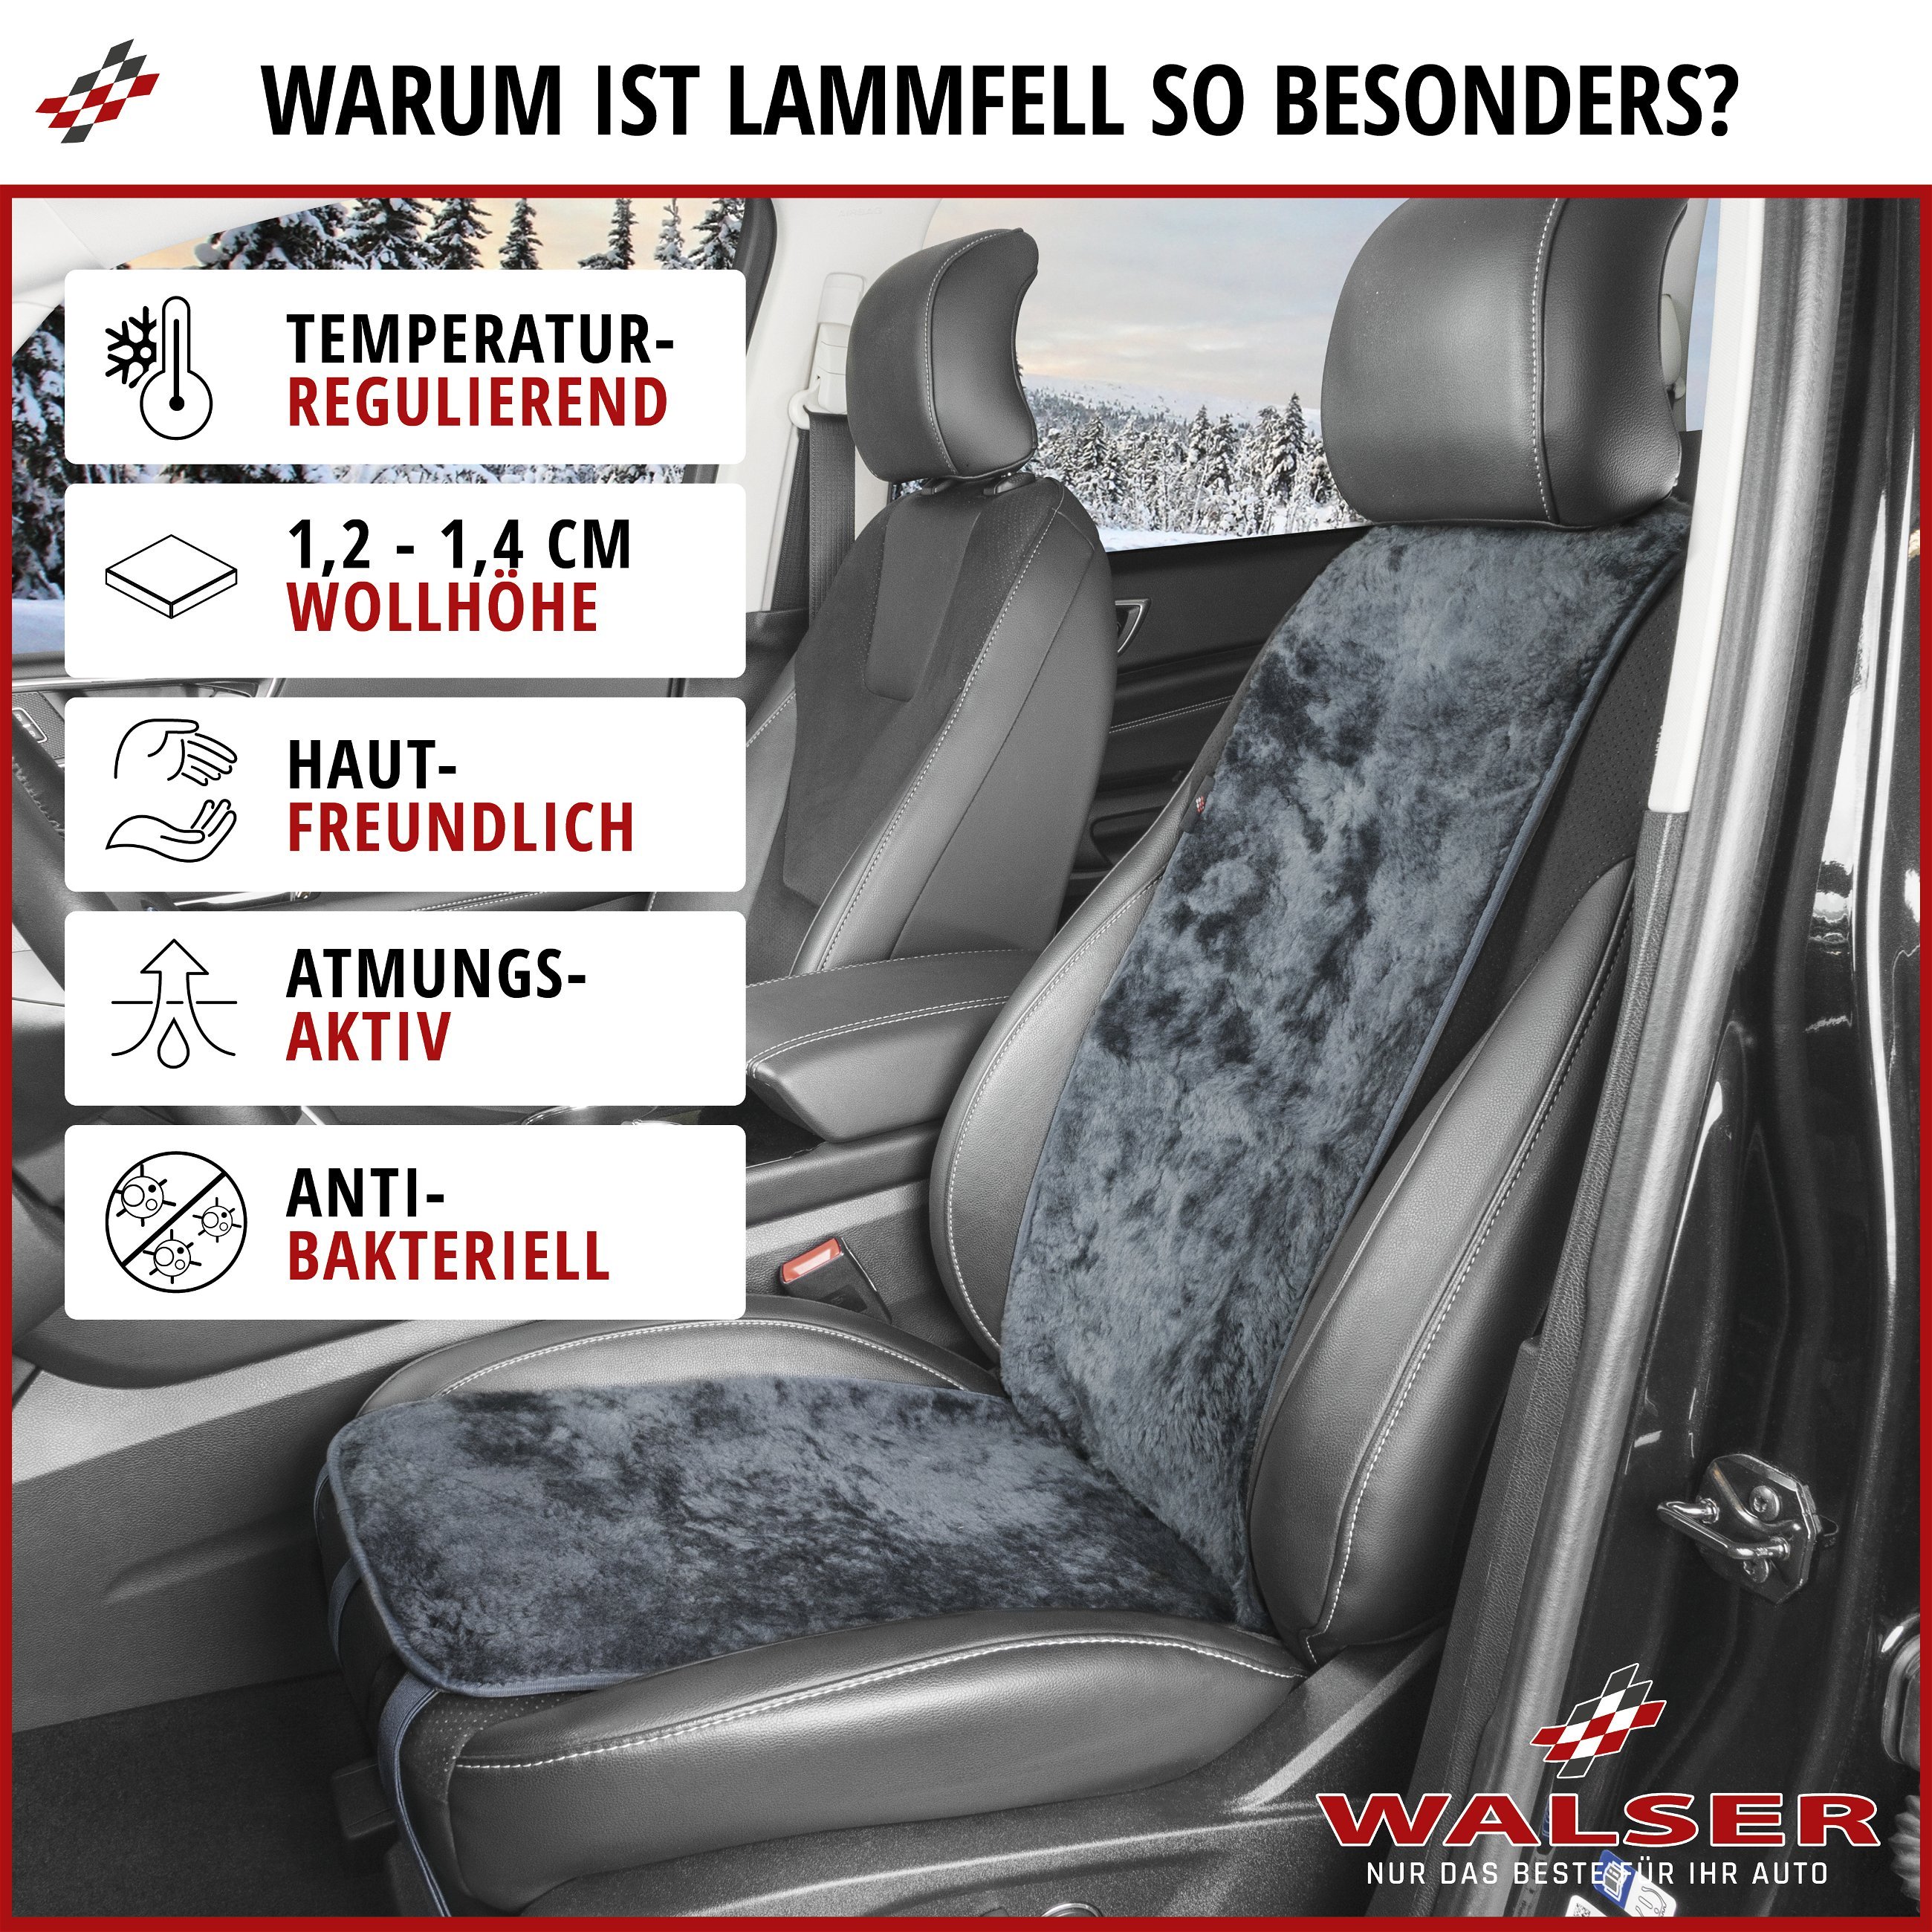 PKW Sitzauflage aus Lammfell Cosmo, Auto-Sitzaufleger, Lammfell-Sitzauflage anthrazit